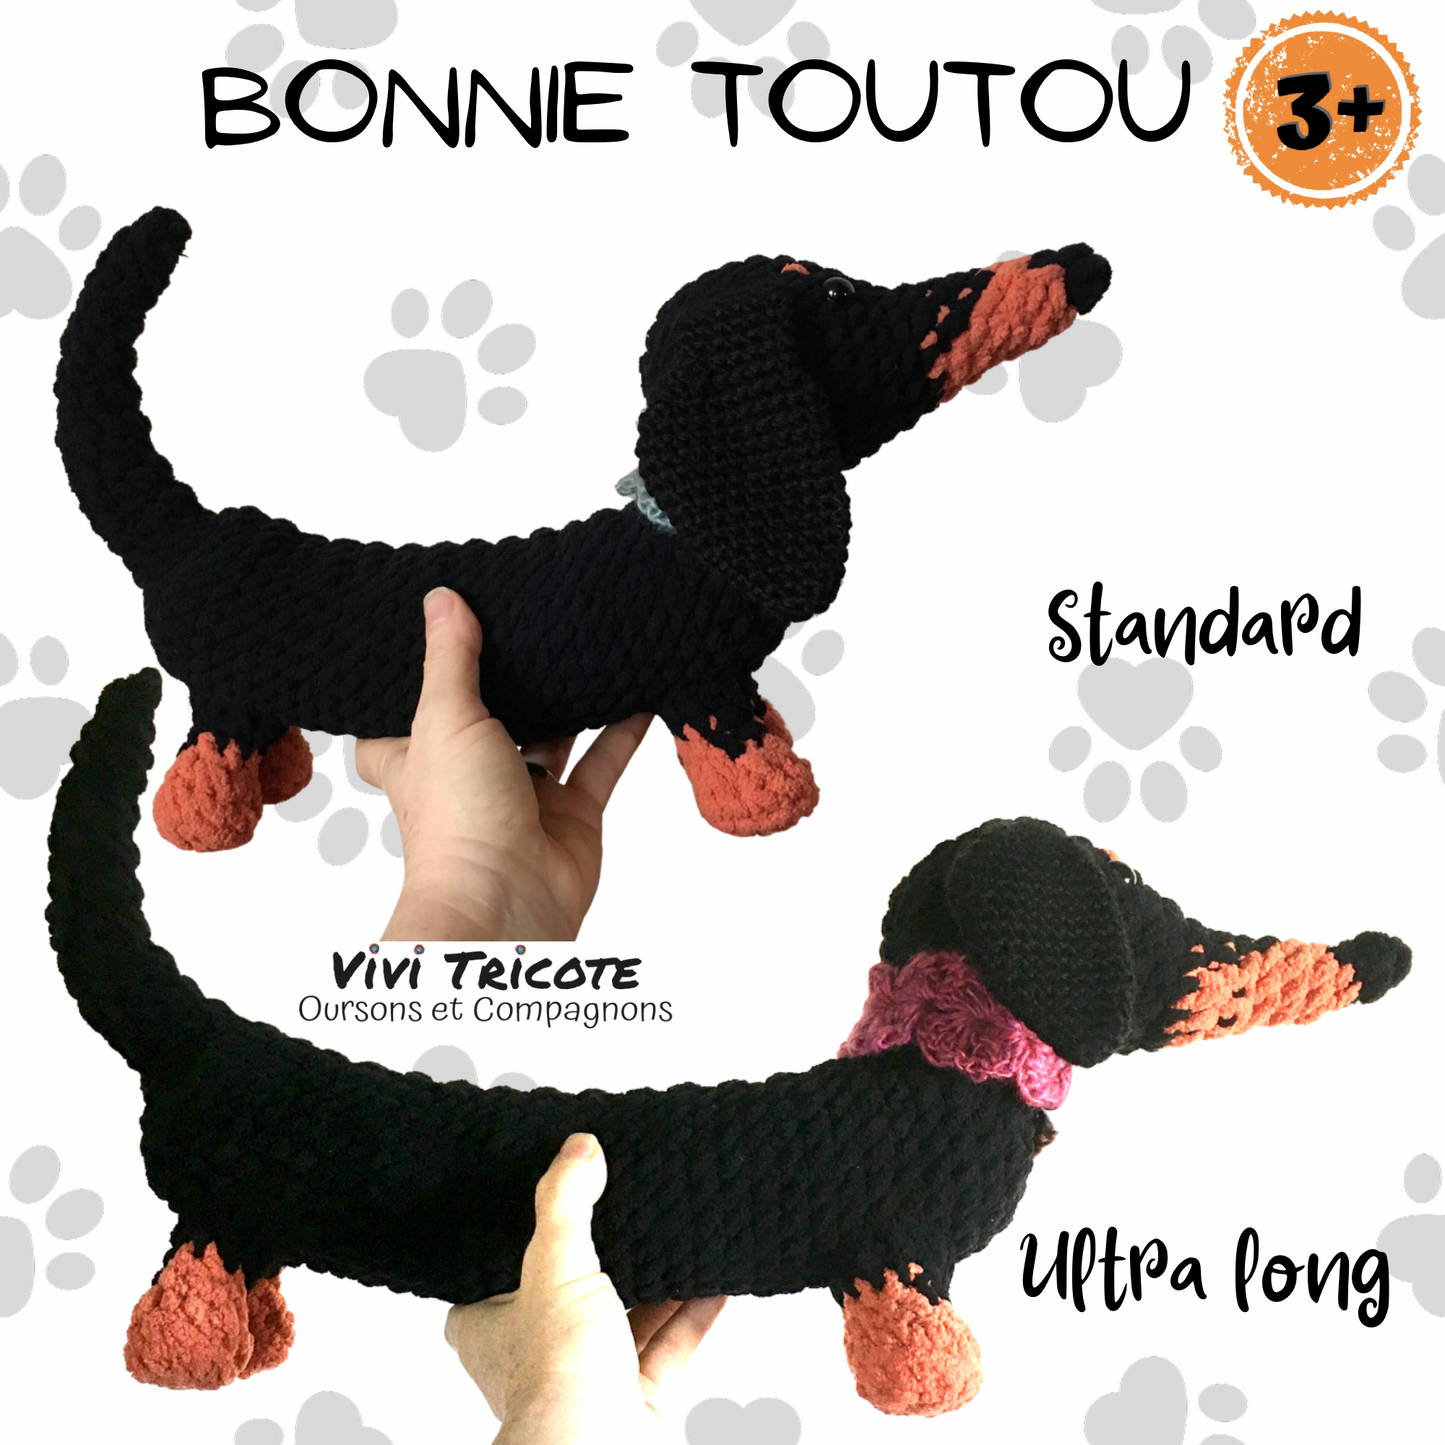 BONNIE TOUTOU, standard or extra long dachshund plush toy